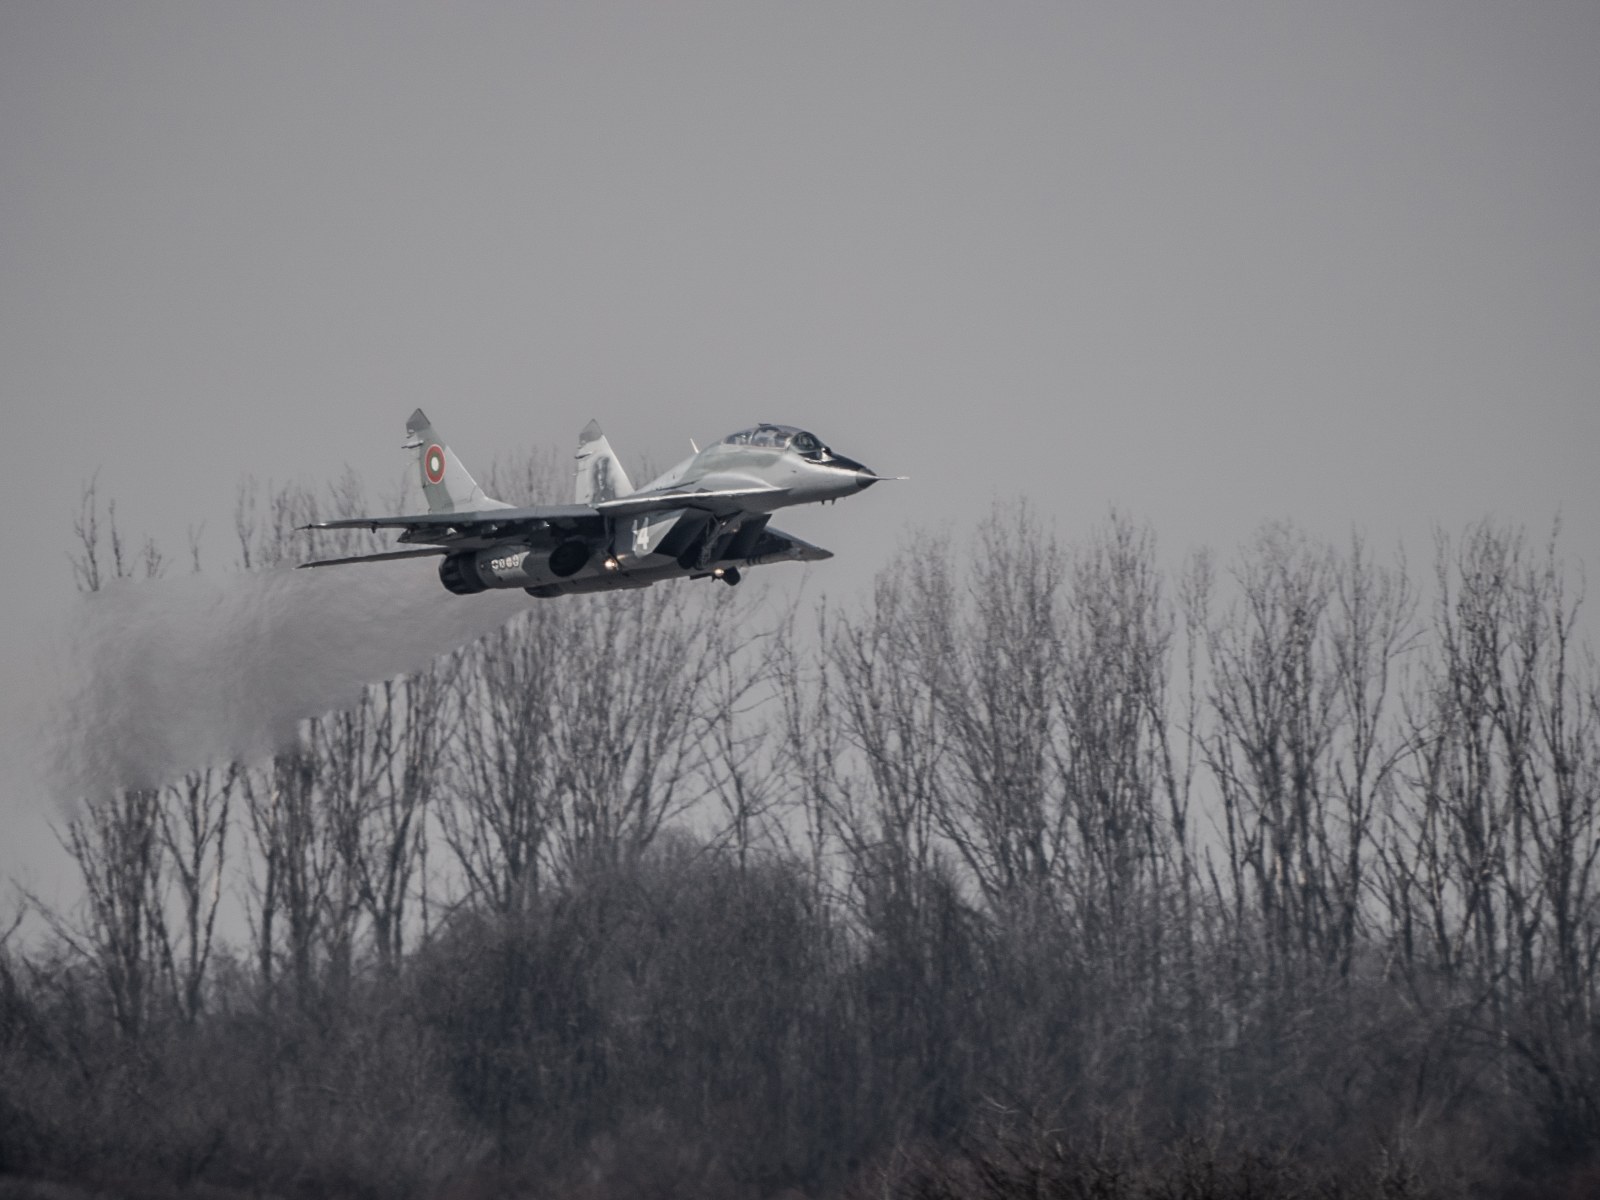 Lo ngại Nga, Liên minh châu Âu không cung cấp máy bay chiến đấu cho Ukraine? - Ảnh 3.